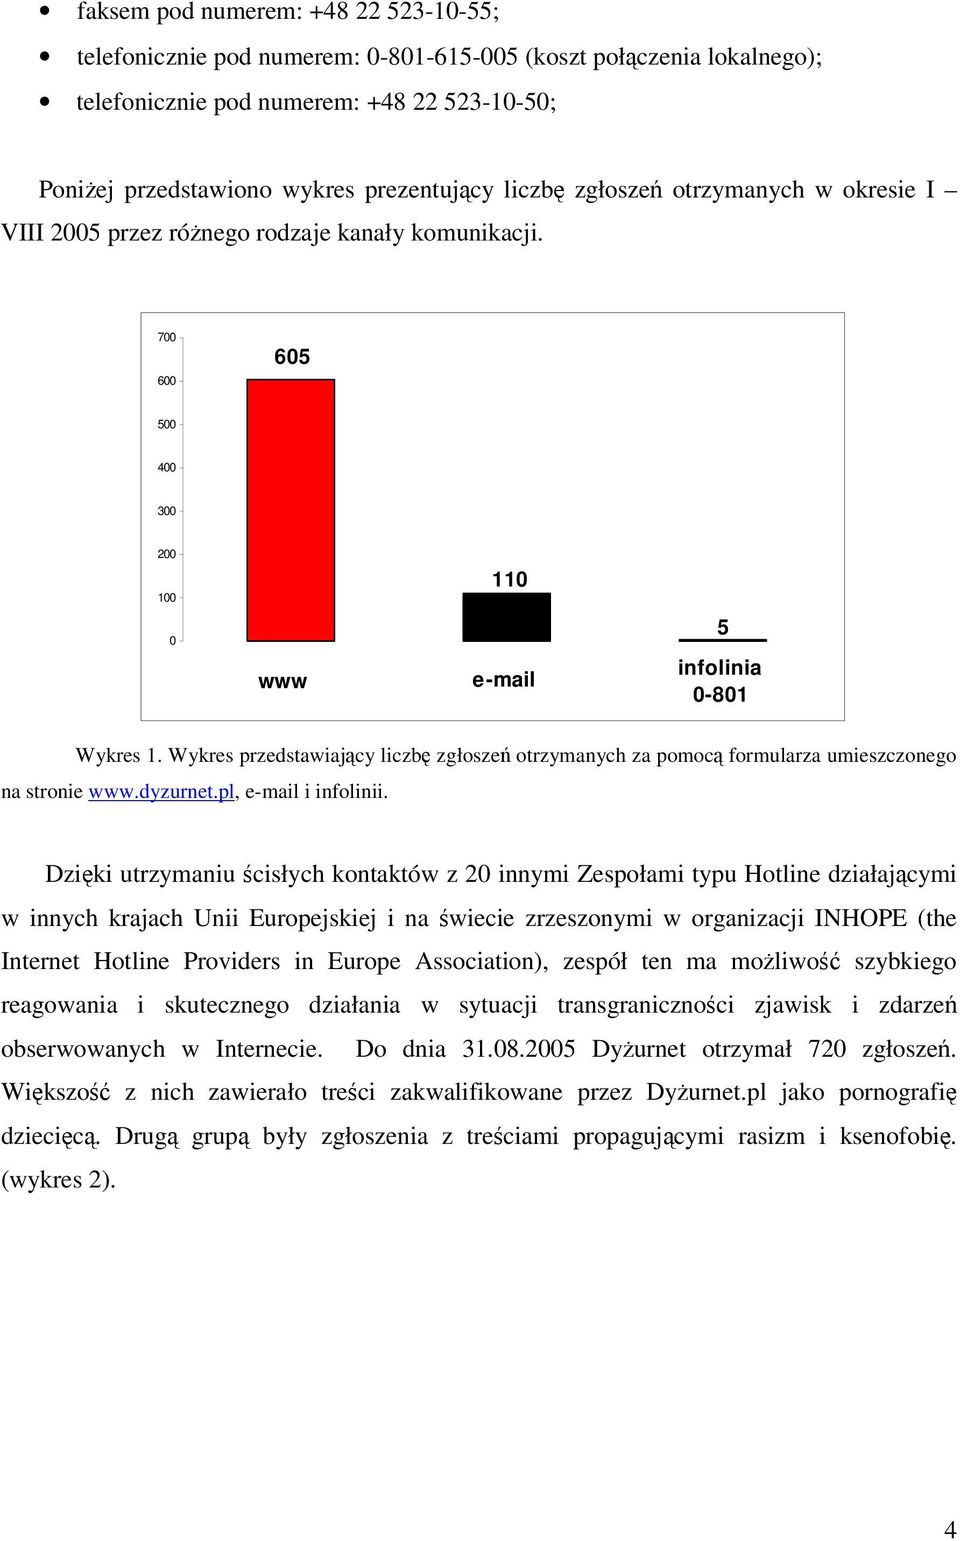 Wykres przedstawiajcy liczb zgłosze otrzymanych za pomoc formularza umieszczonego na stronie www.dyzurnet.pl, e-mail i infolinii.